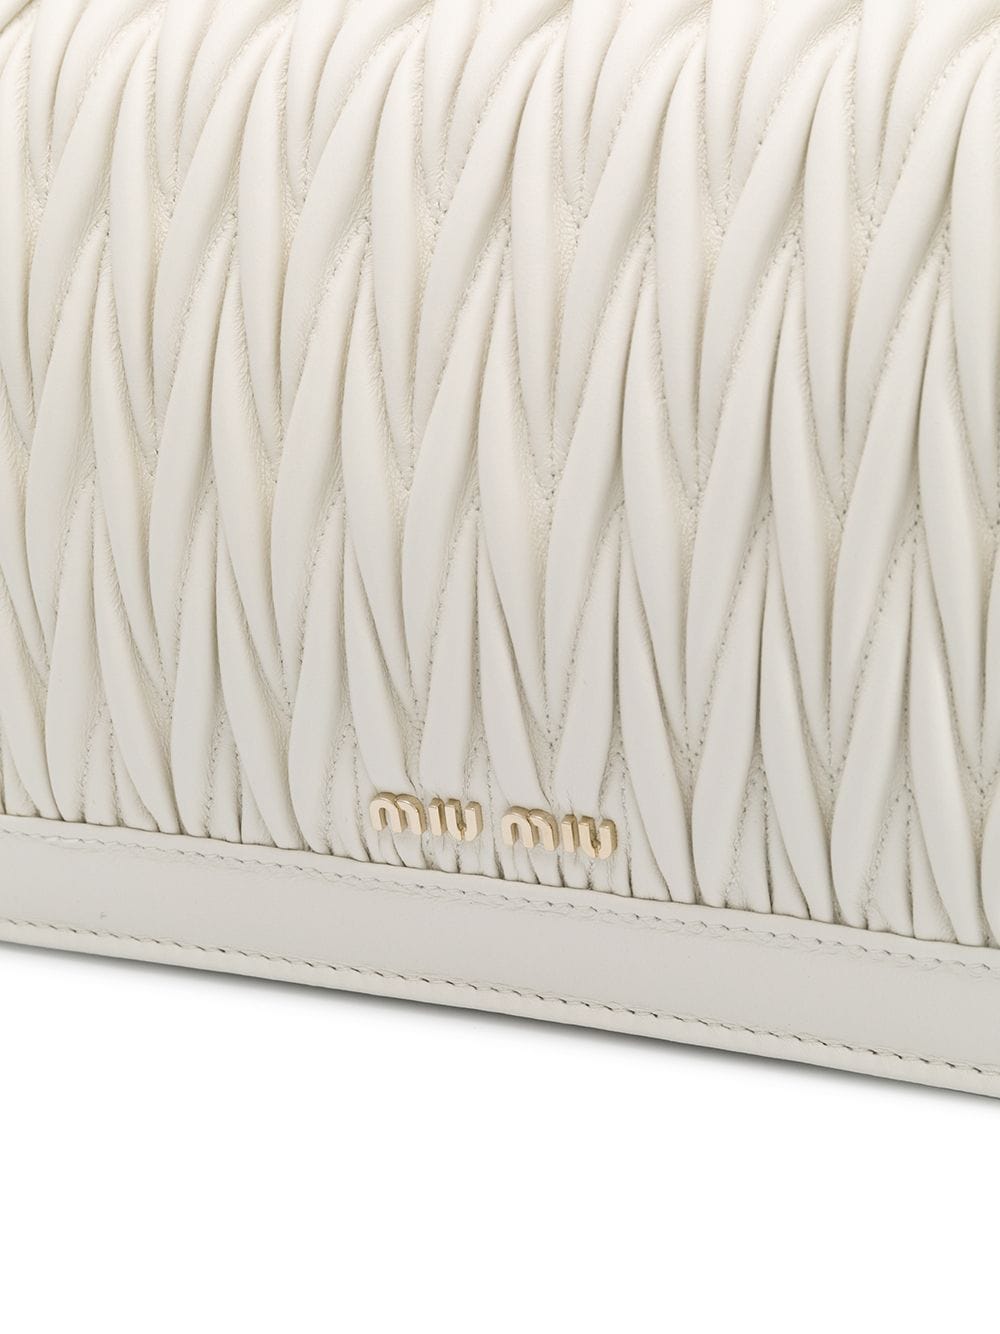 Miu Miu Confidential Matelassé Crossbody Bag - White for Women